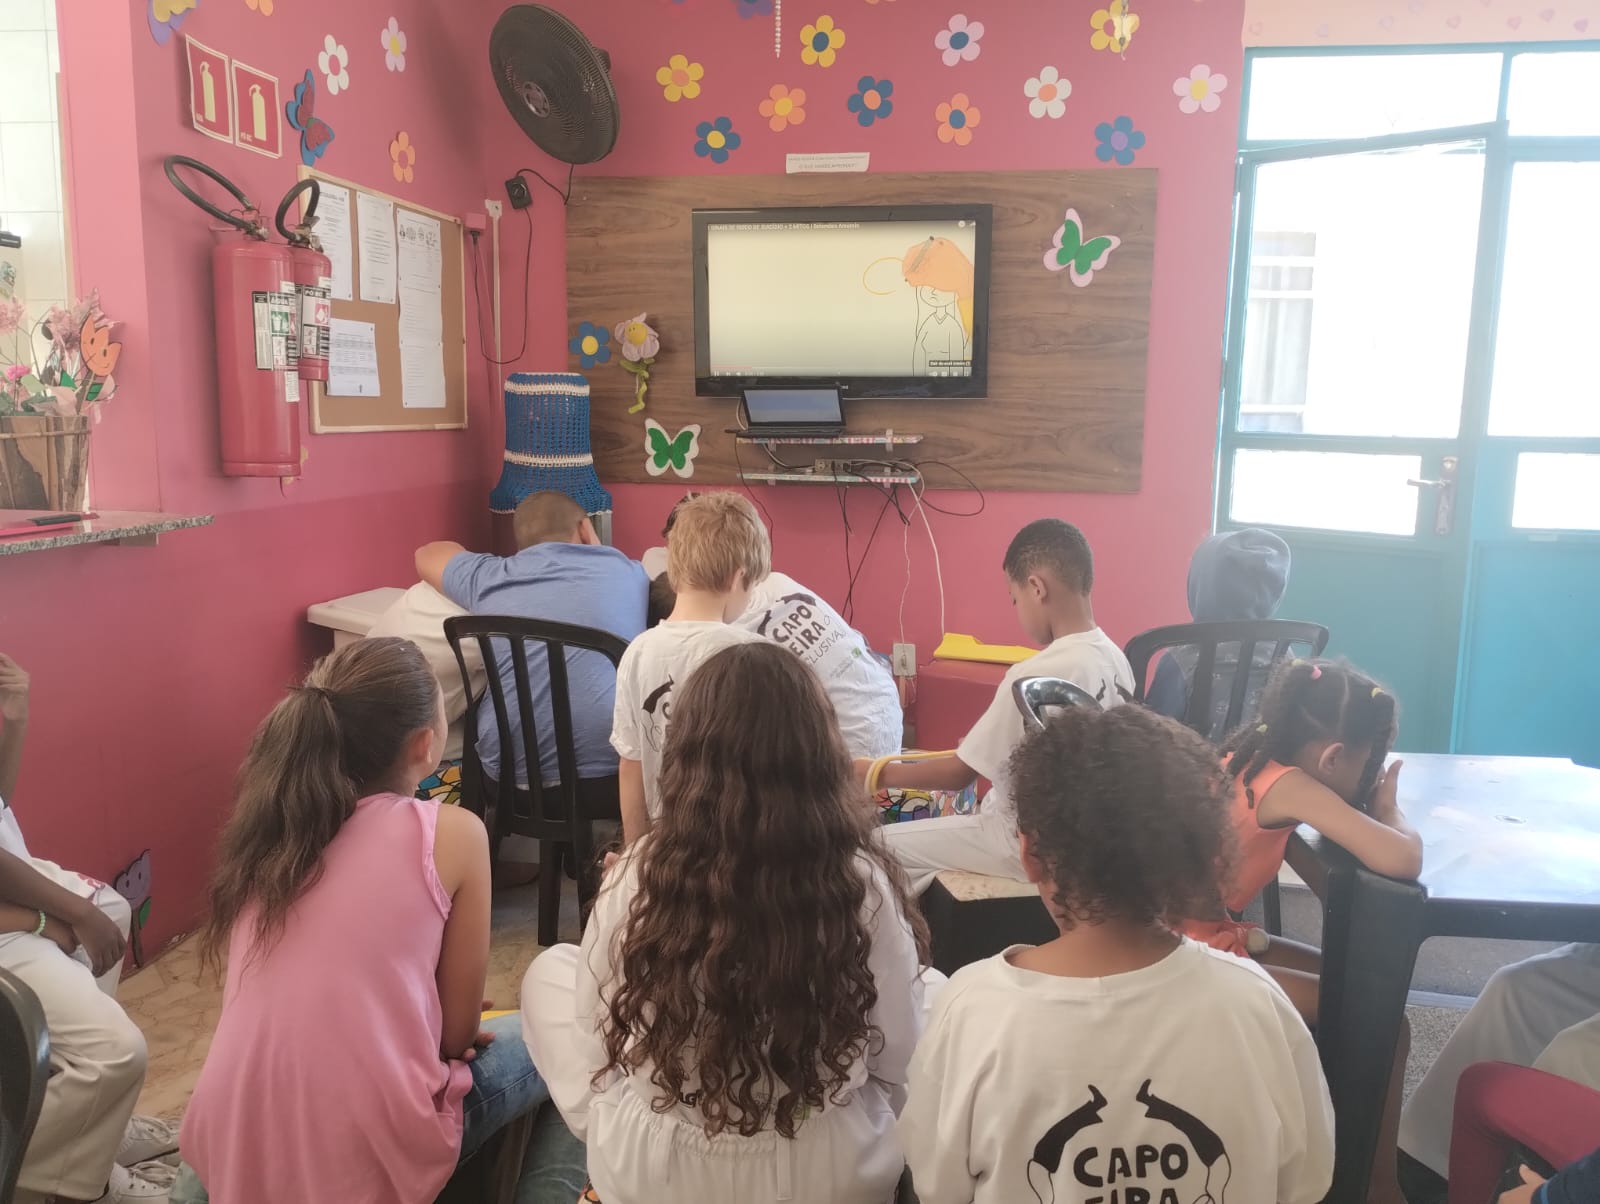 Na imagem, diversas crianças estão sentadas em uma sala de aula, com paredes azul e rosa, assistindo um vídeo em uma televisão